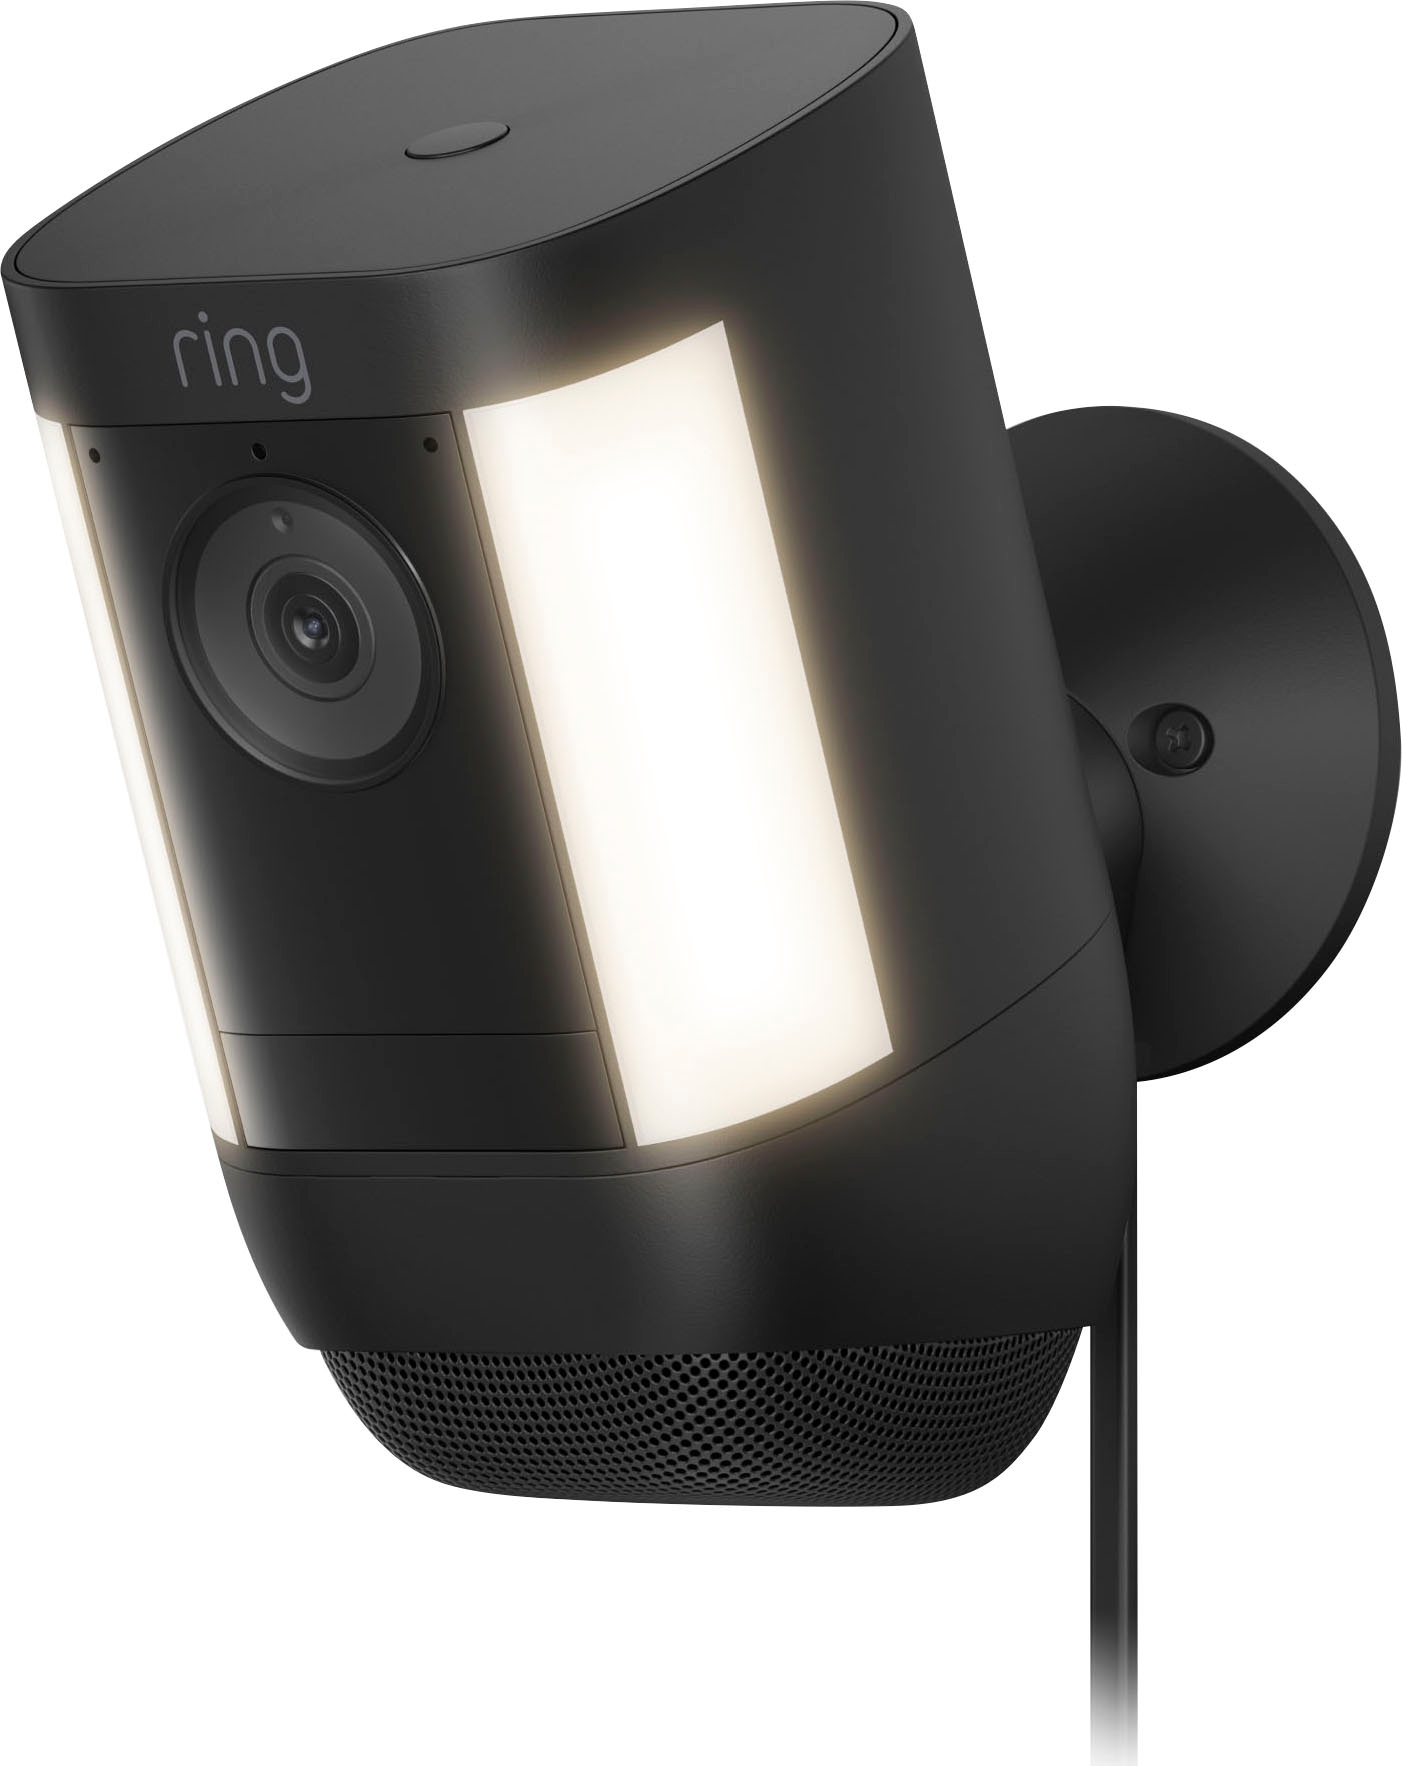 Überwachungskamera »Spotlight Cam Pro Plug-In«, Aussenbereich